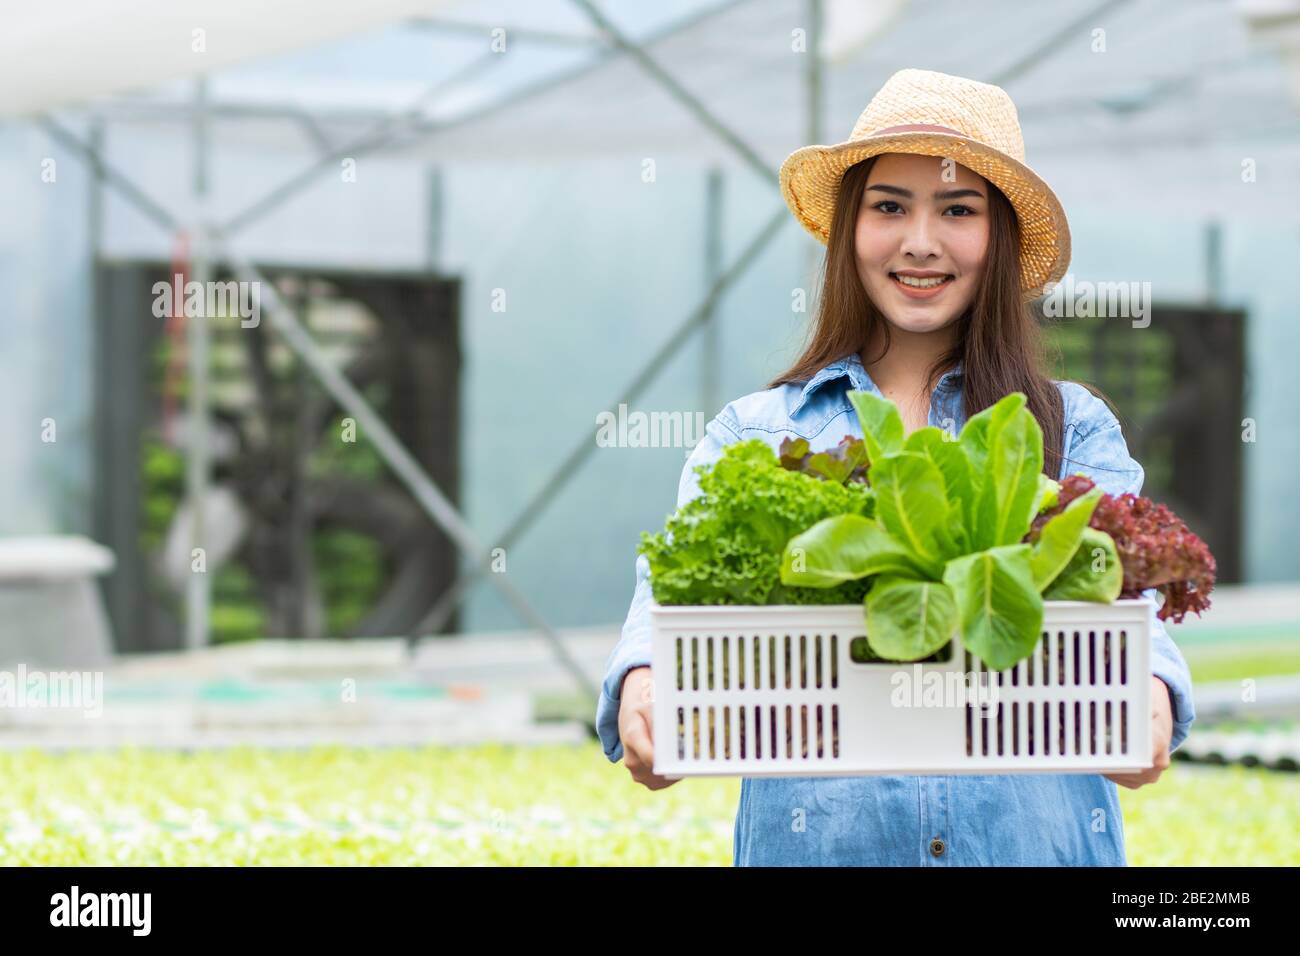 Gesunde Ernährung Bio-Gemüse-Bauernhof, glücklich attraktive Frau Besitzerin Kiste voll von hydroponischem Gemüse, halten und kombinieren Pflanzen im Korb in der gree Stockfoto